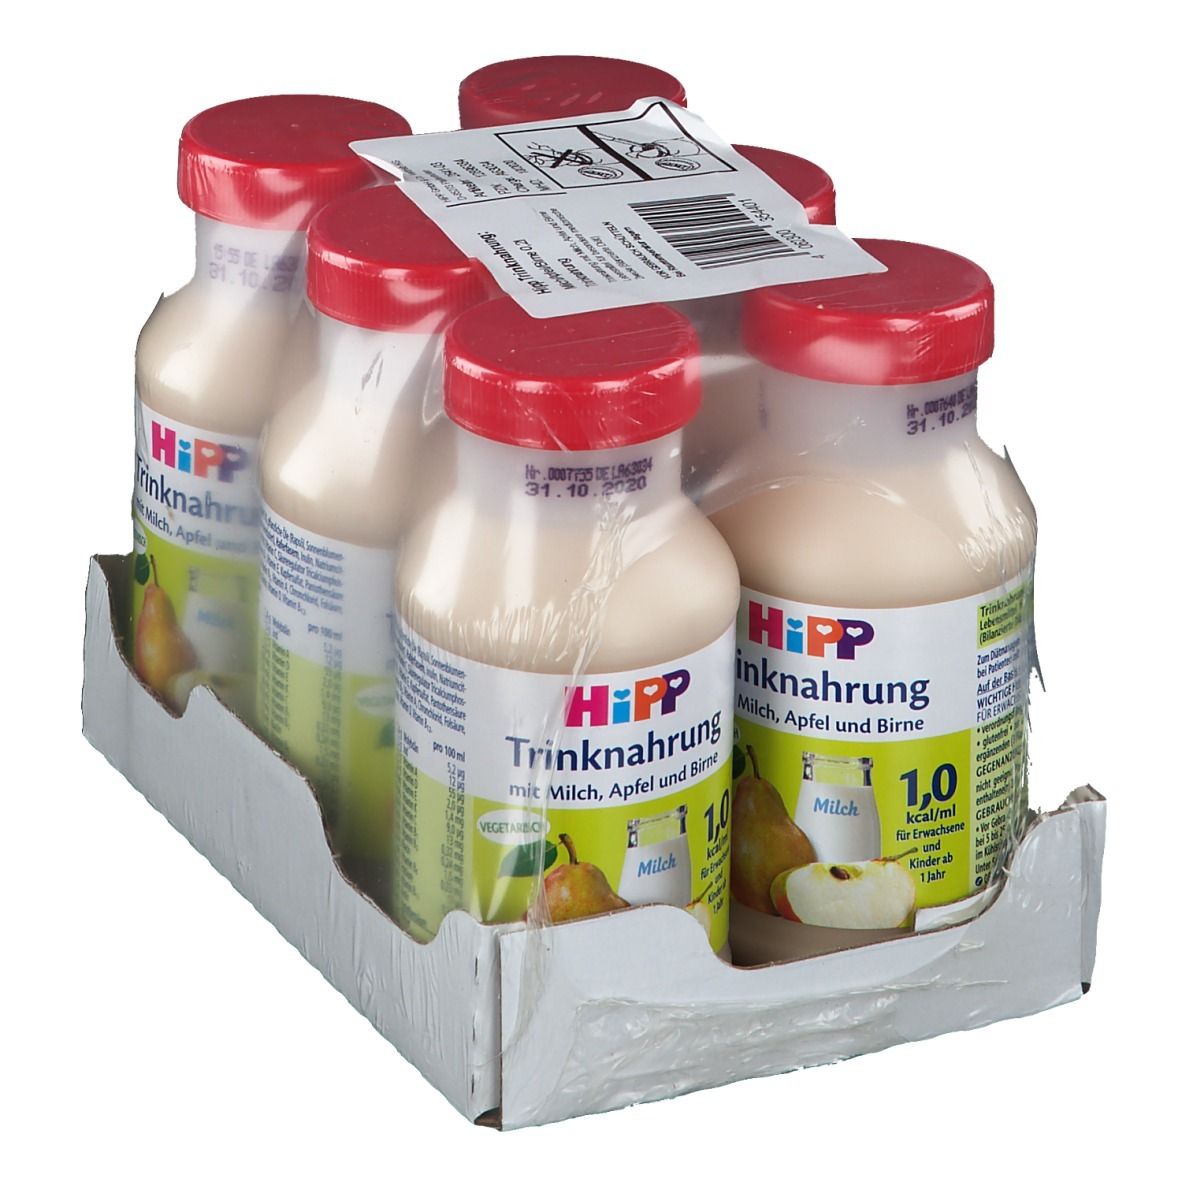 Hipp Trinknahrung mit Milch, Apfel & Birne Spezialnahrung ab 1 Jahr